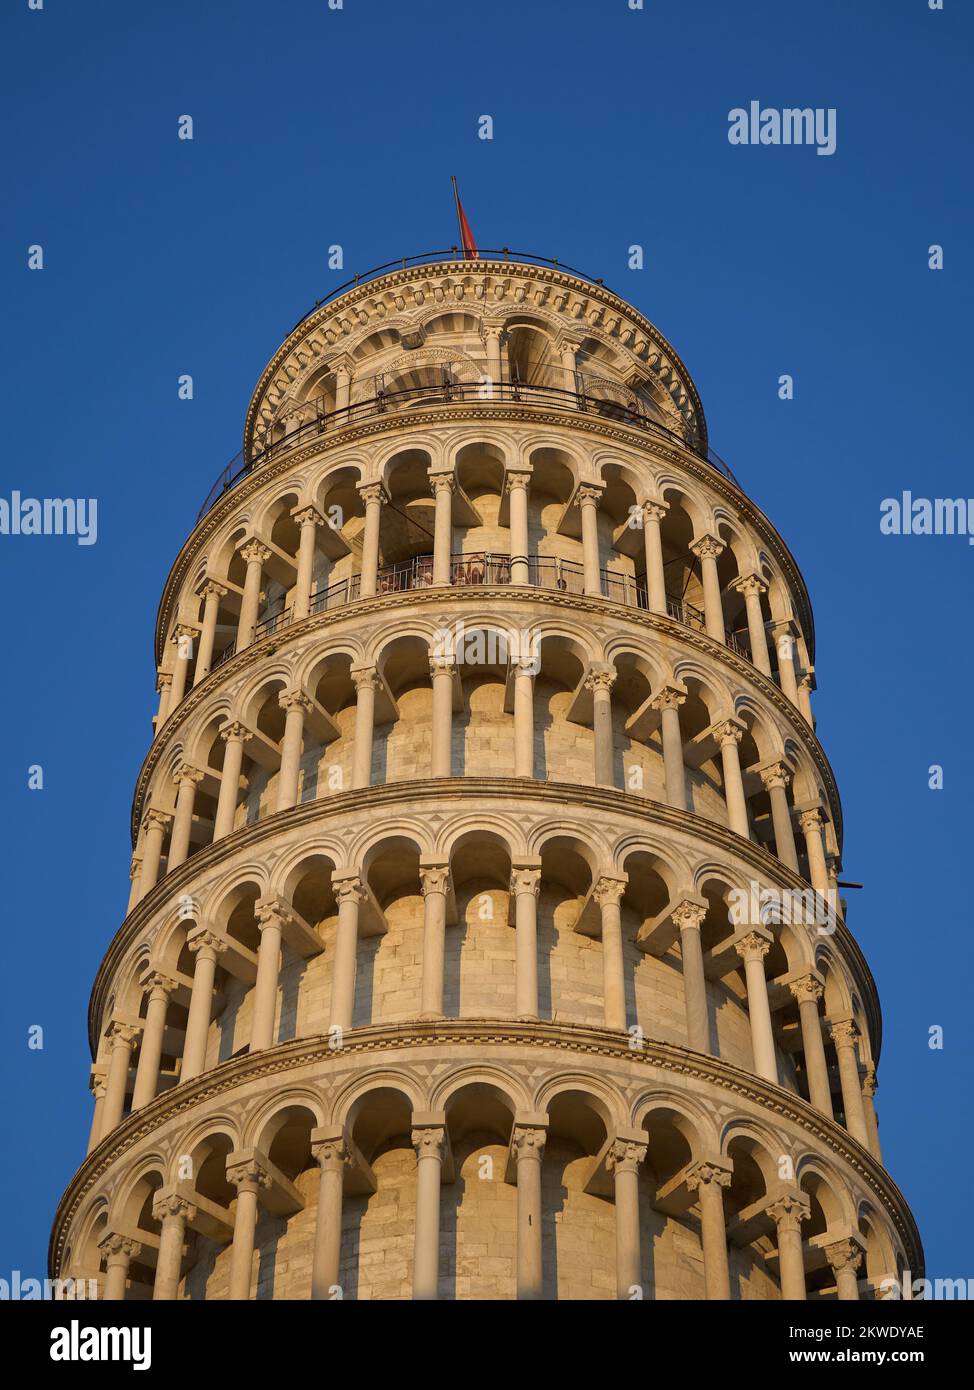 La torre inclinada situada en Pisa, Italia Foto de stock